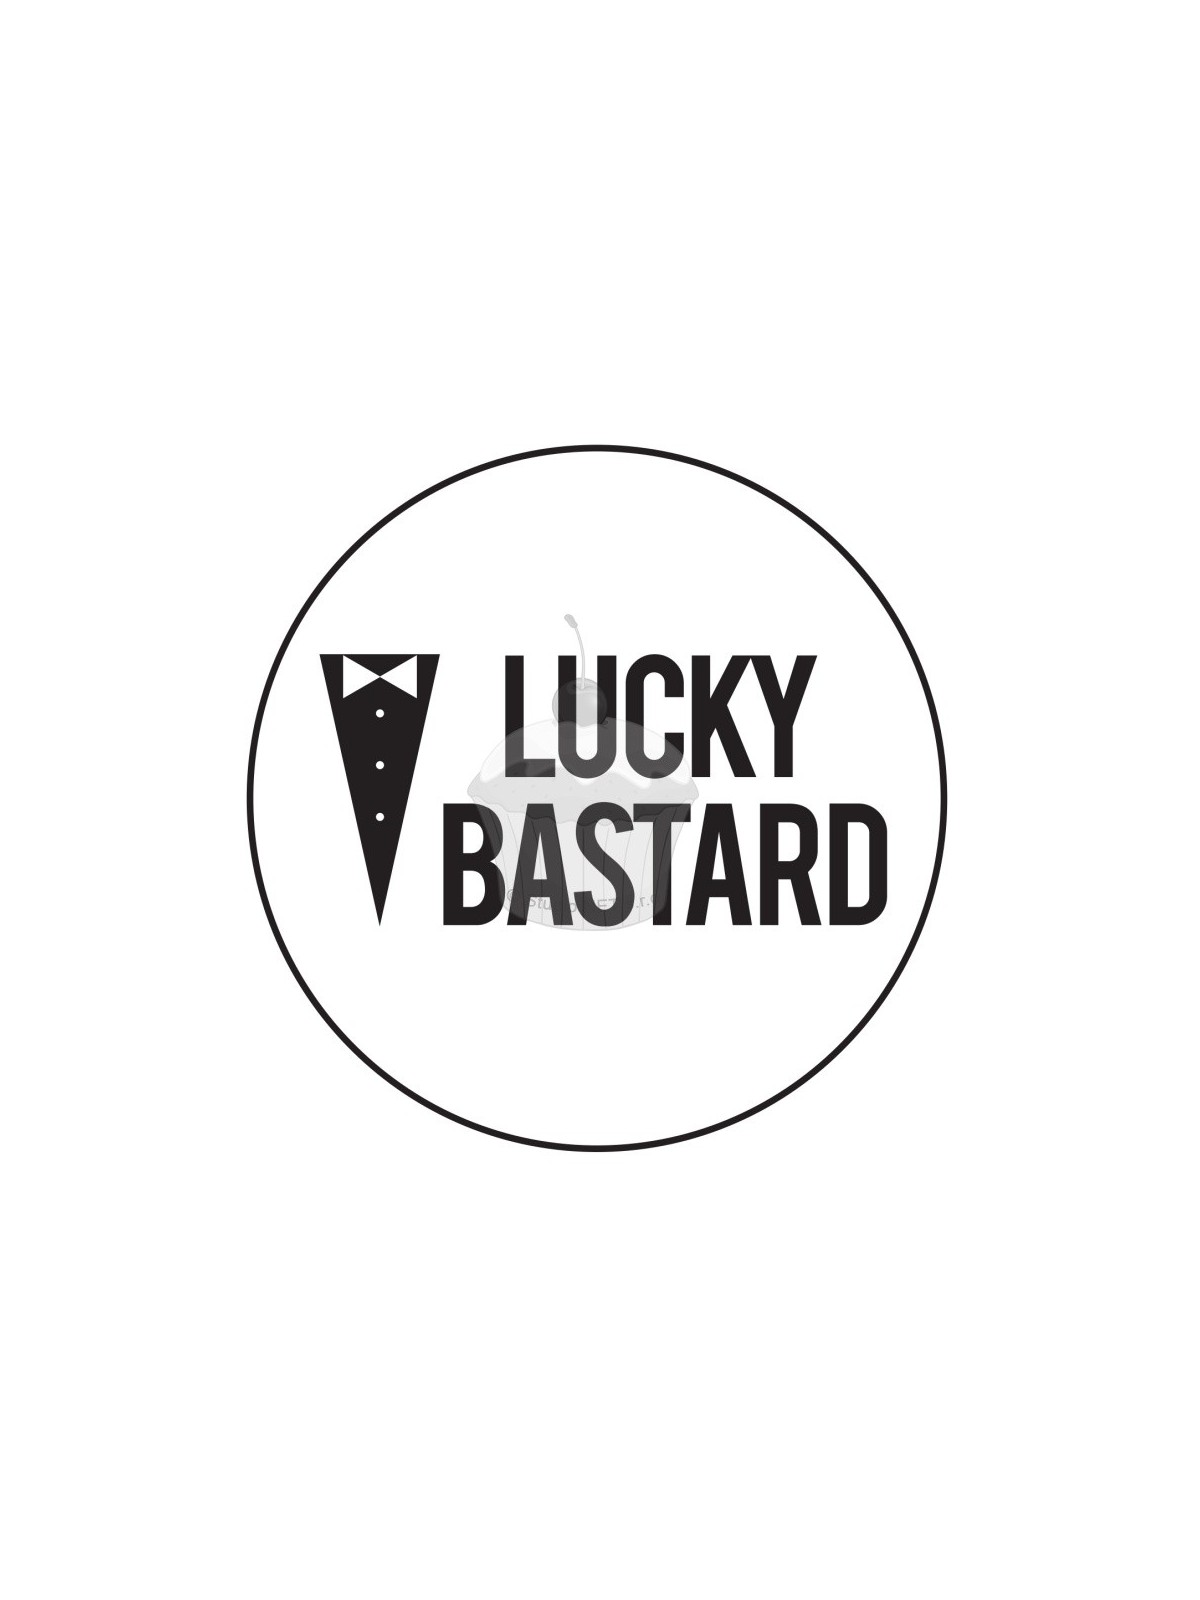 Edible paper "Lucky Bastard" A4